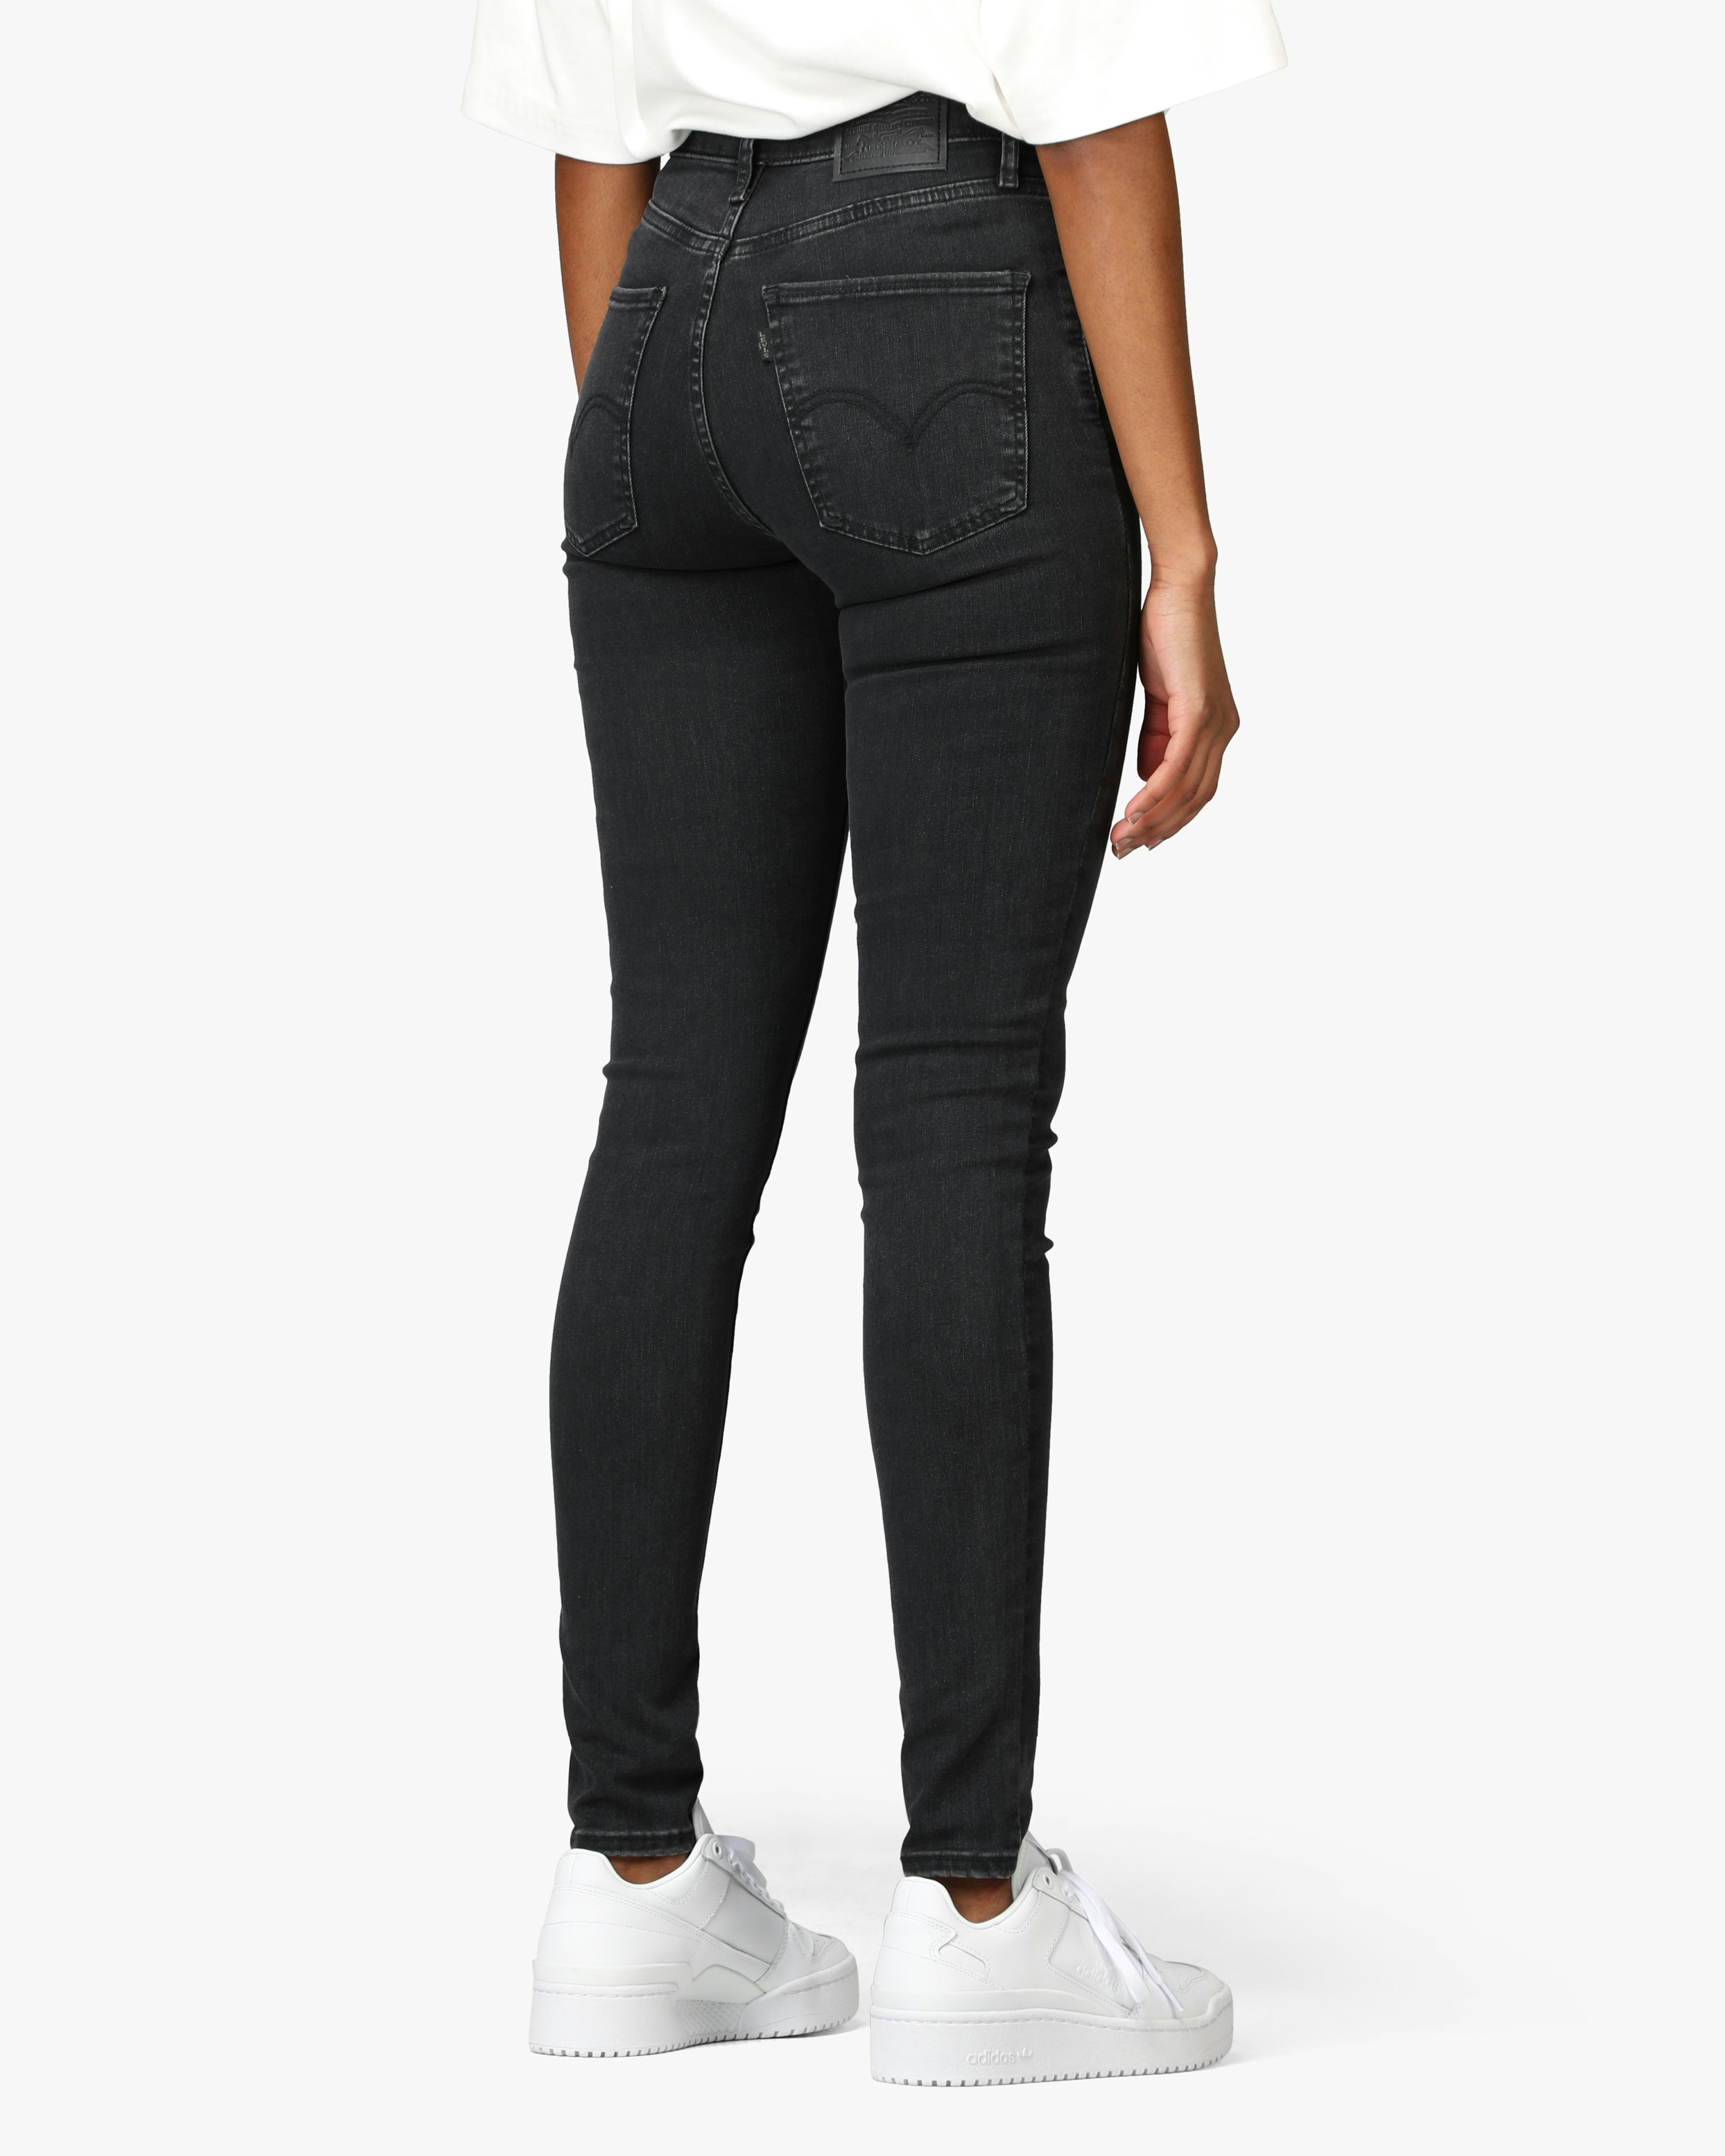 smart dash Akkumulerede Levis Mile High Super Skinny Black Jeans | Women | at Carlings.com